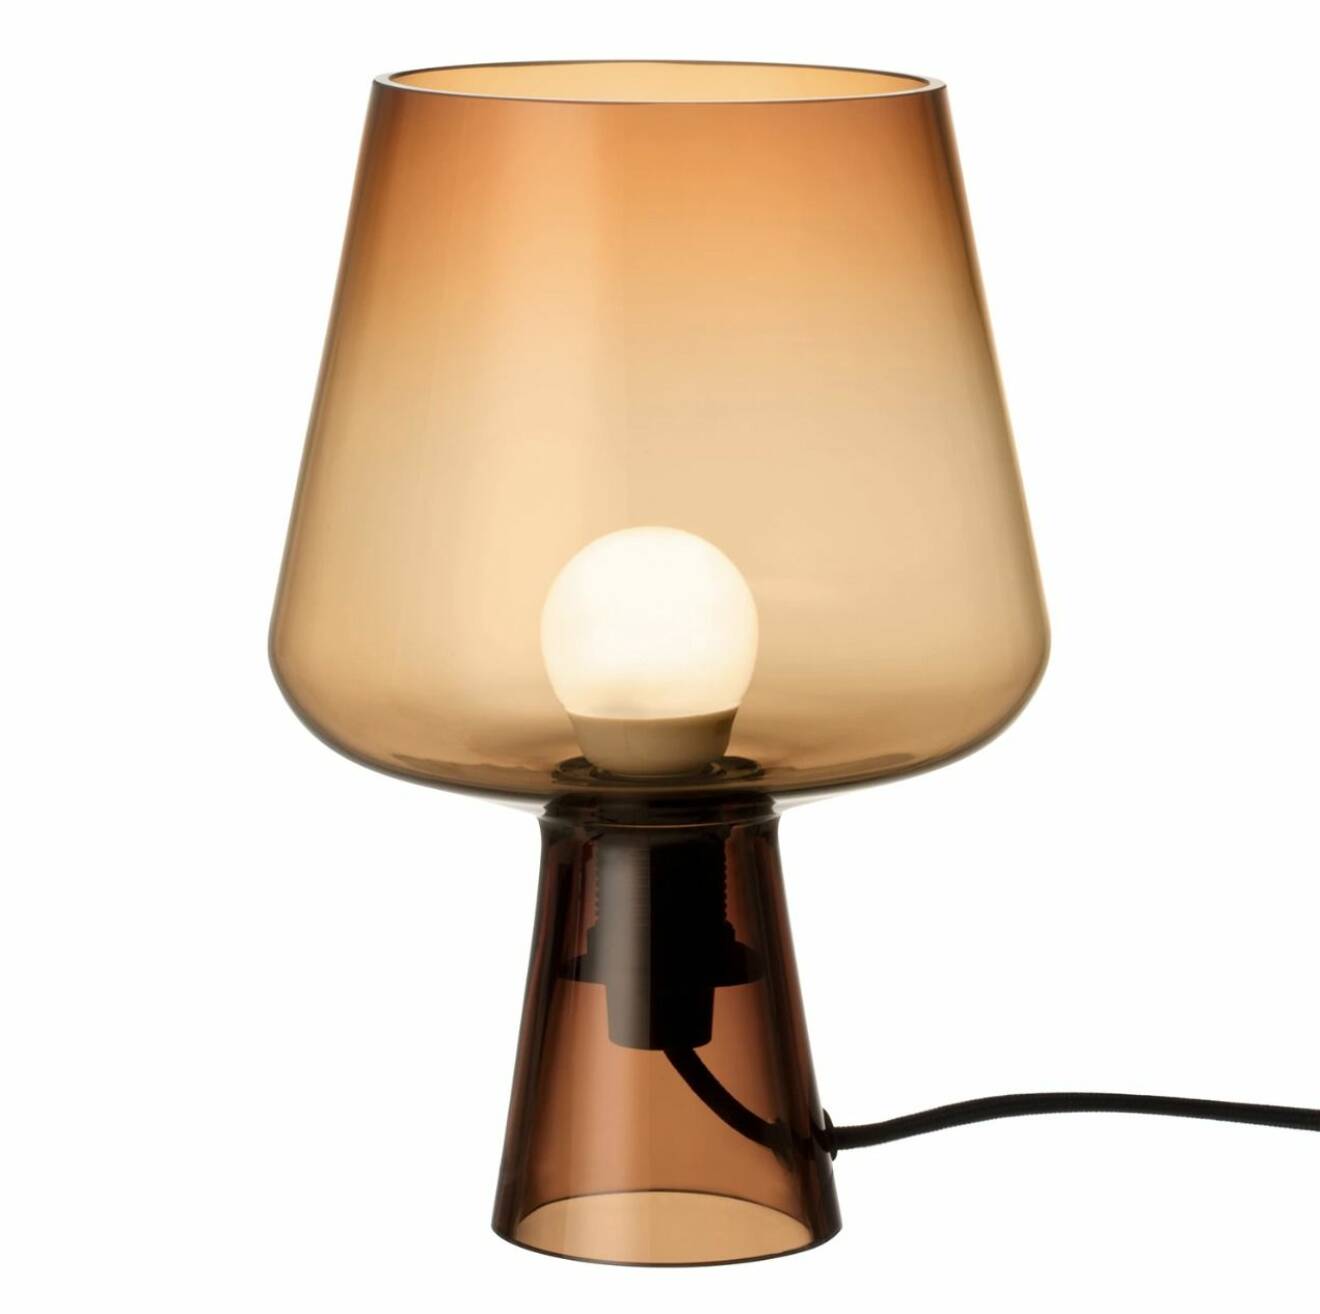 Munblåsta lampan Leimu med design av norska formgivaren Magnus Pettersen.